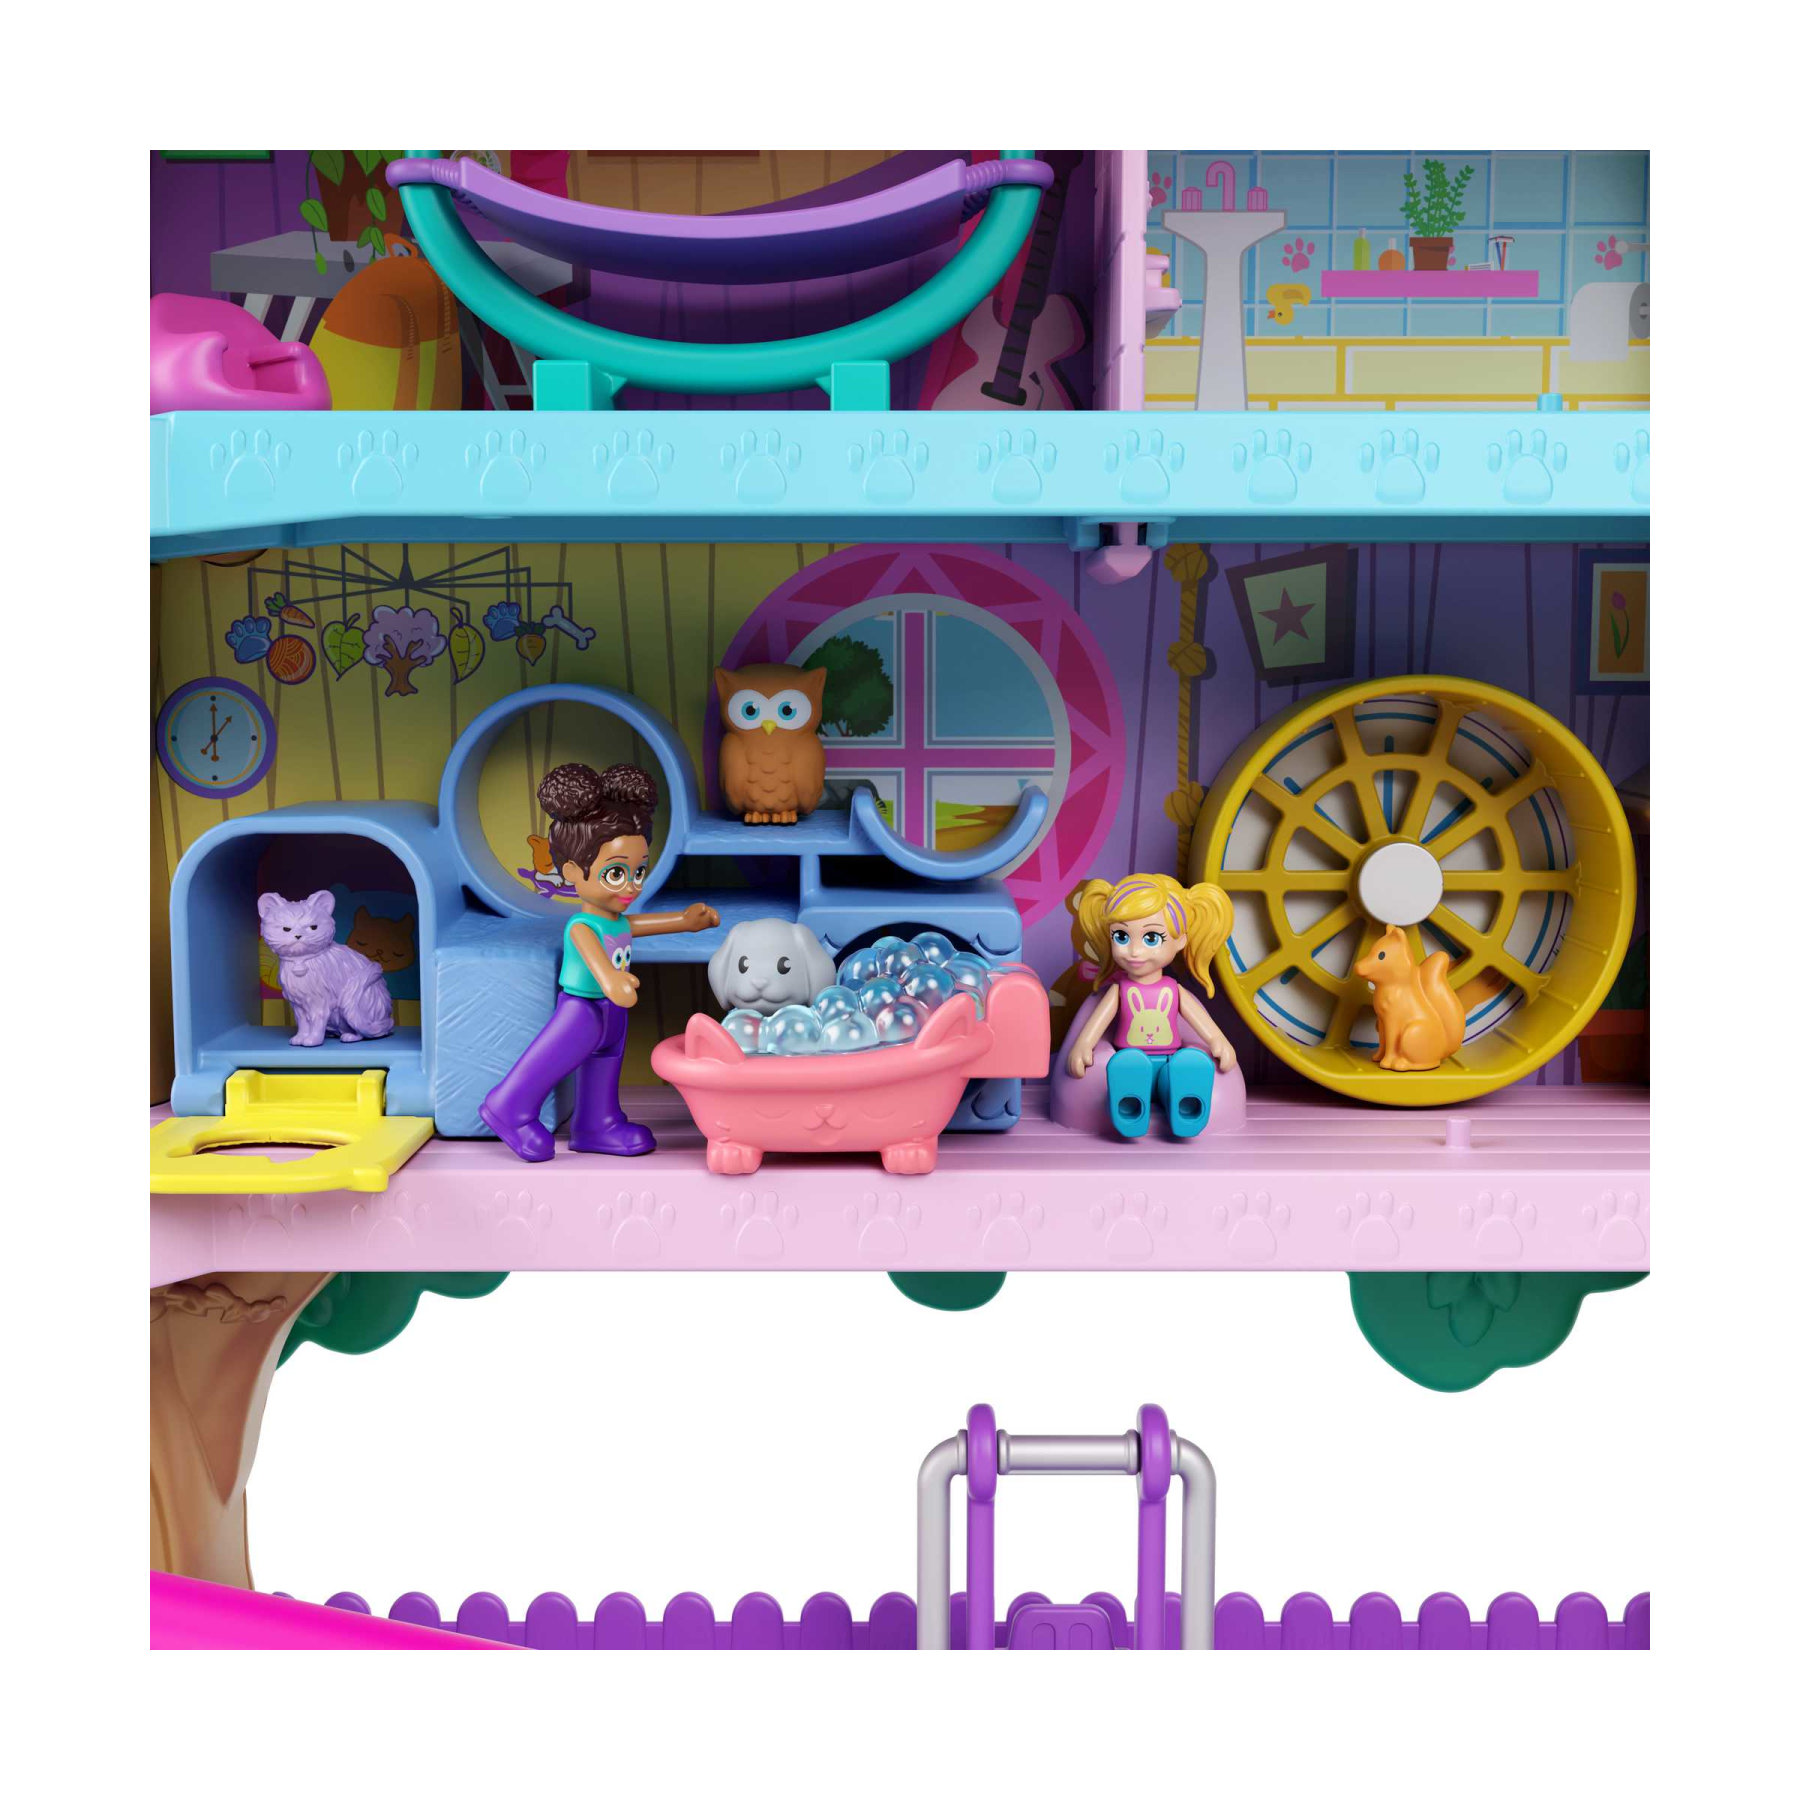 Polly pocket pollyville casa sull'albero dei cuccioli, playset a 5 piani, 15+ pezzi gioco: 2 bambole, veicolo, 4 animali e accessori, giocattolo per bambini 4+ anni - Polly Pocket